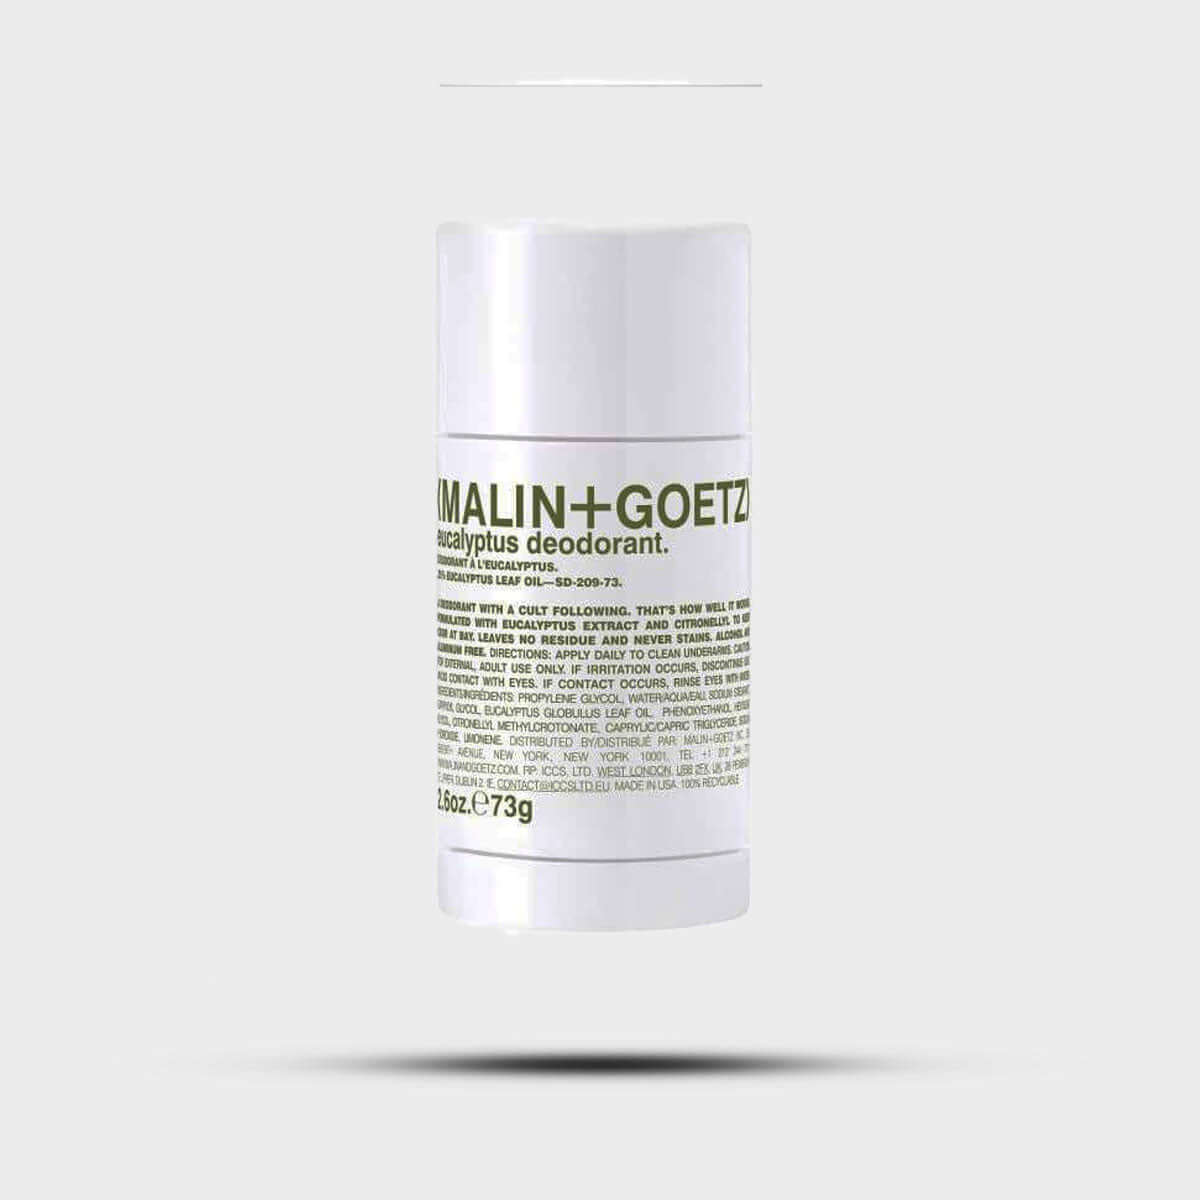 Deodorant deodorant by Malin + Goetz,Size 28g, - La Maison Du Parfum